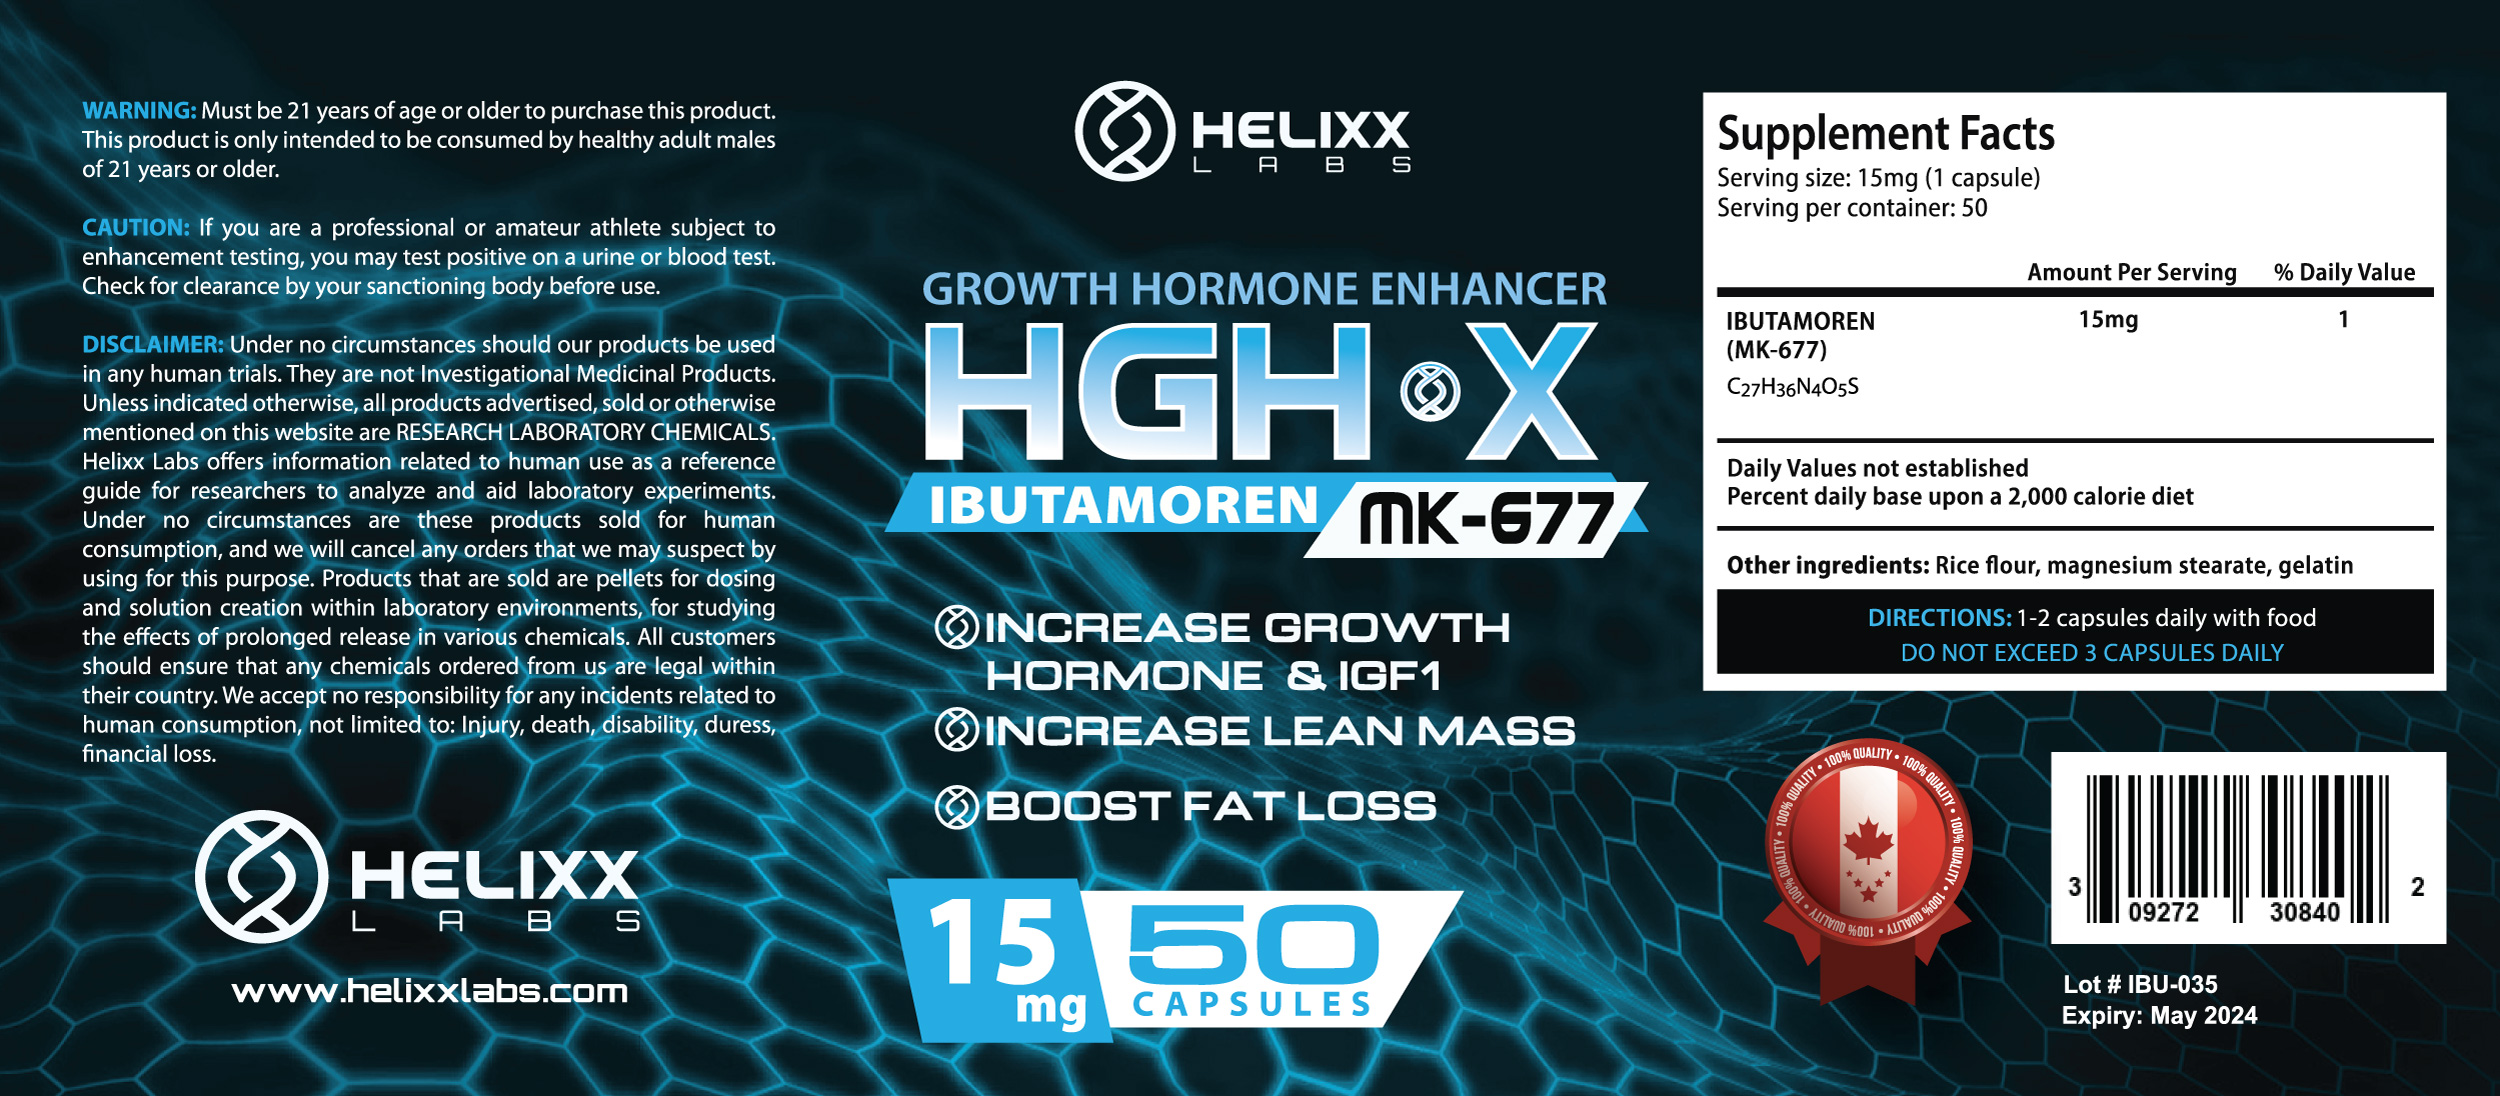 Helixx-HGH-X-curves